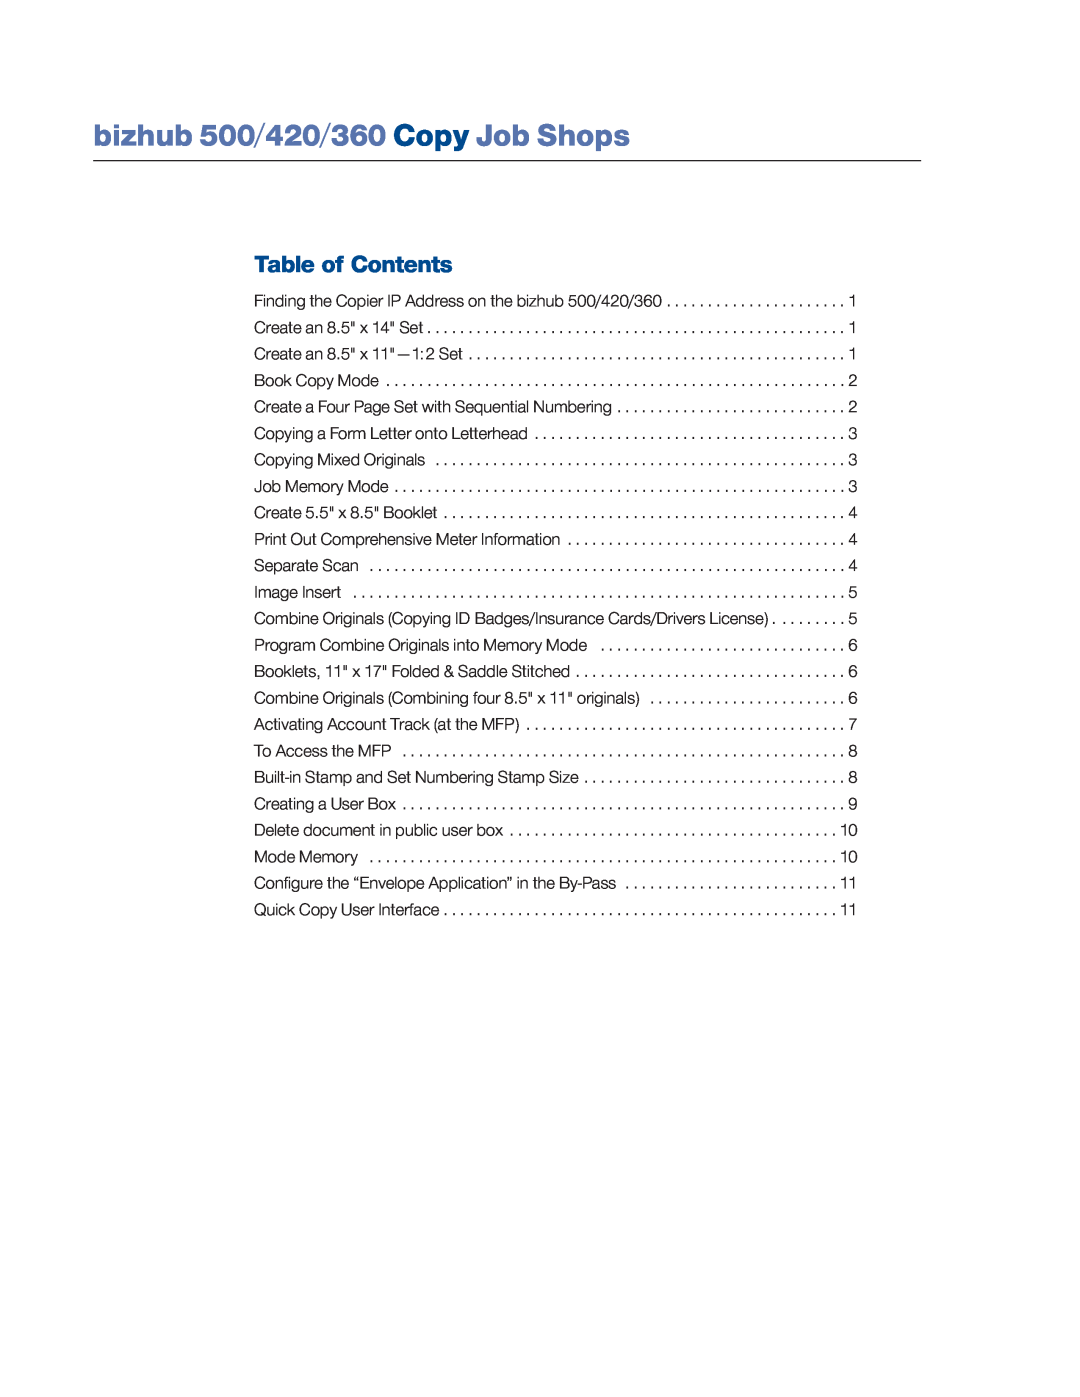 Konica Minolta manual bizhub 500/420/360 Copy Job Shops, Table of Contents 